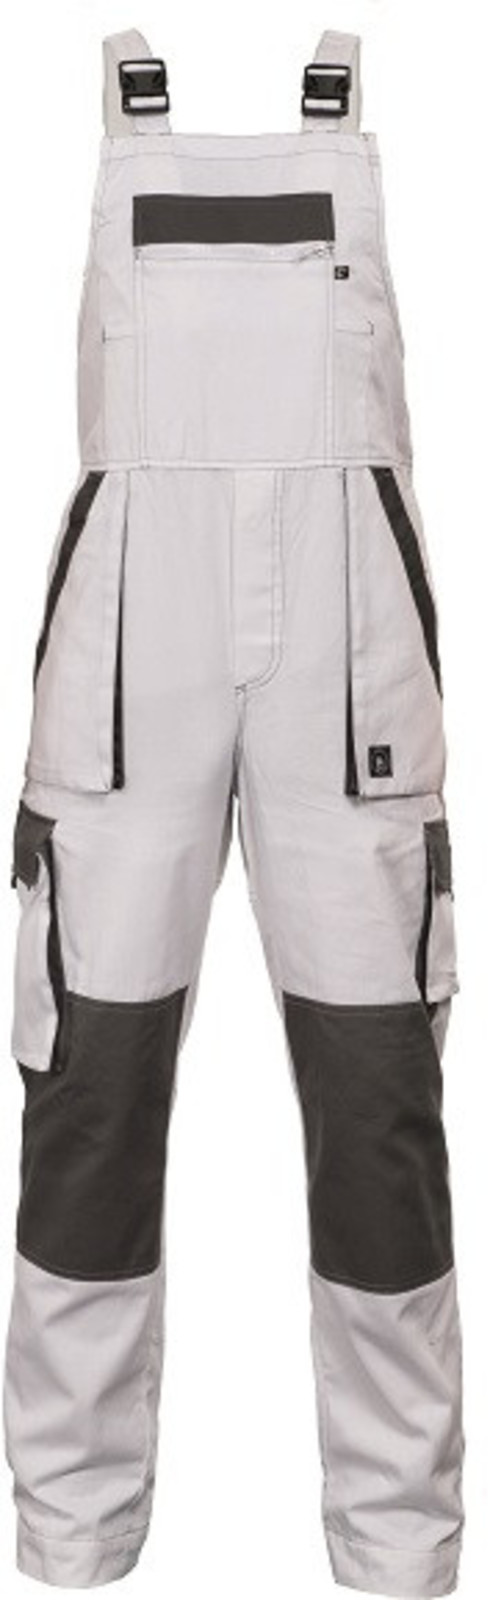 Tenšie bavlnené montérky na traky Max Summer - veľkosť: 58, farba: biela/sivá